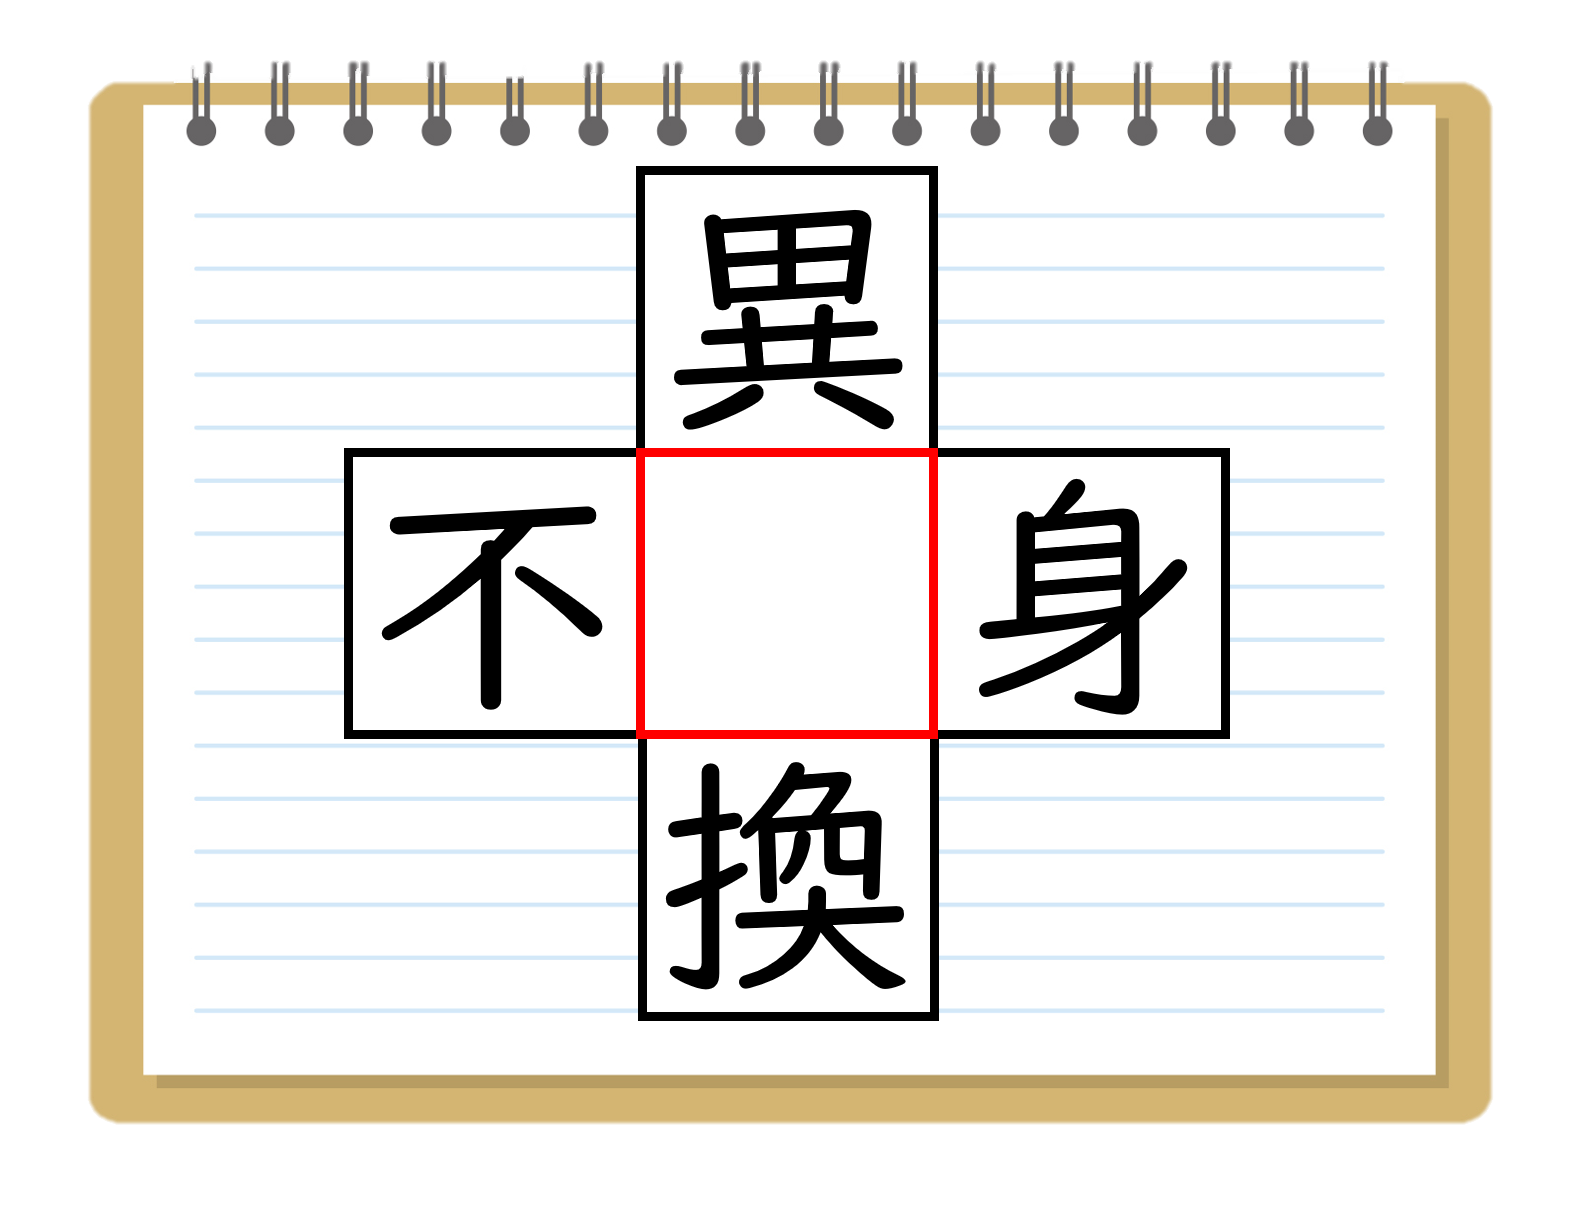 漢字穴埋めクイズ 中学生向け 全問 簡単 面白い虫食い問題 パズル クイズ王国